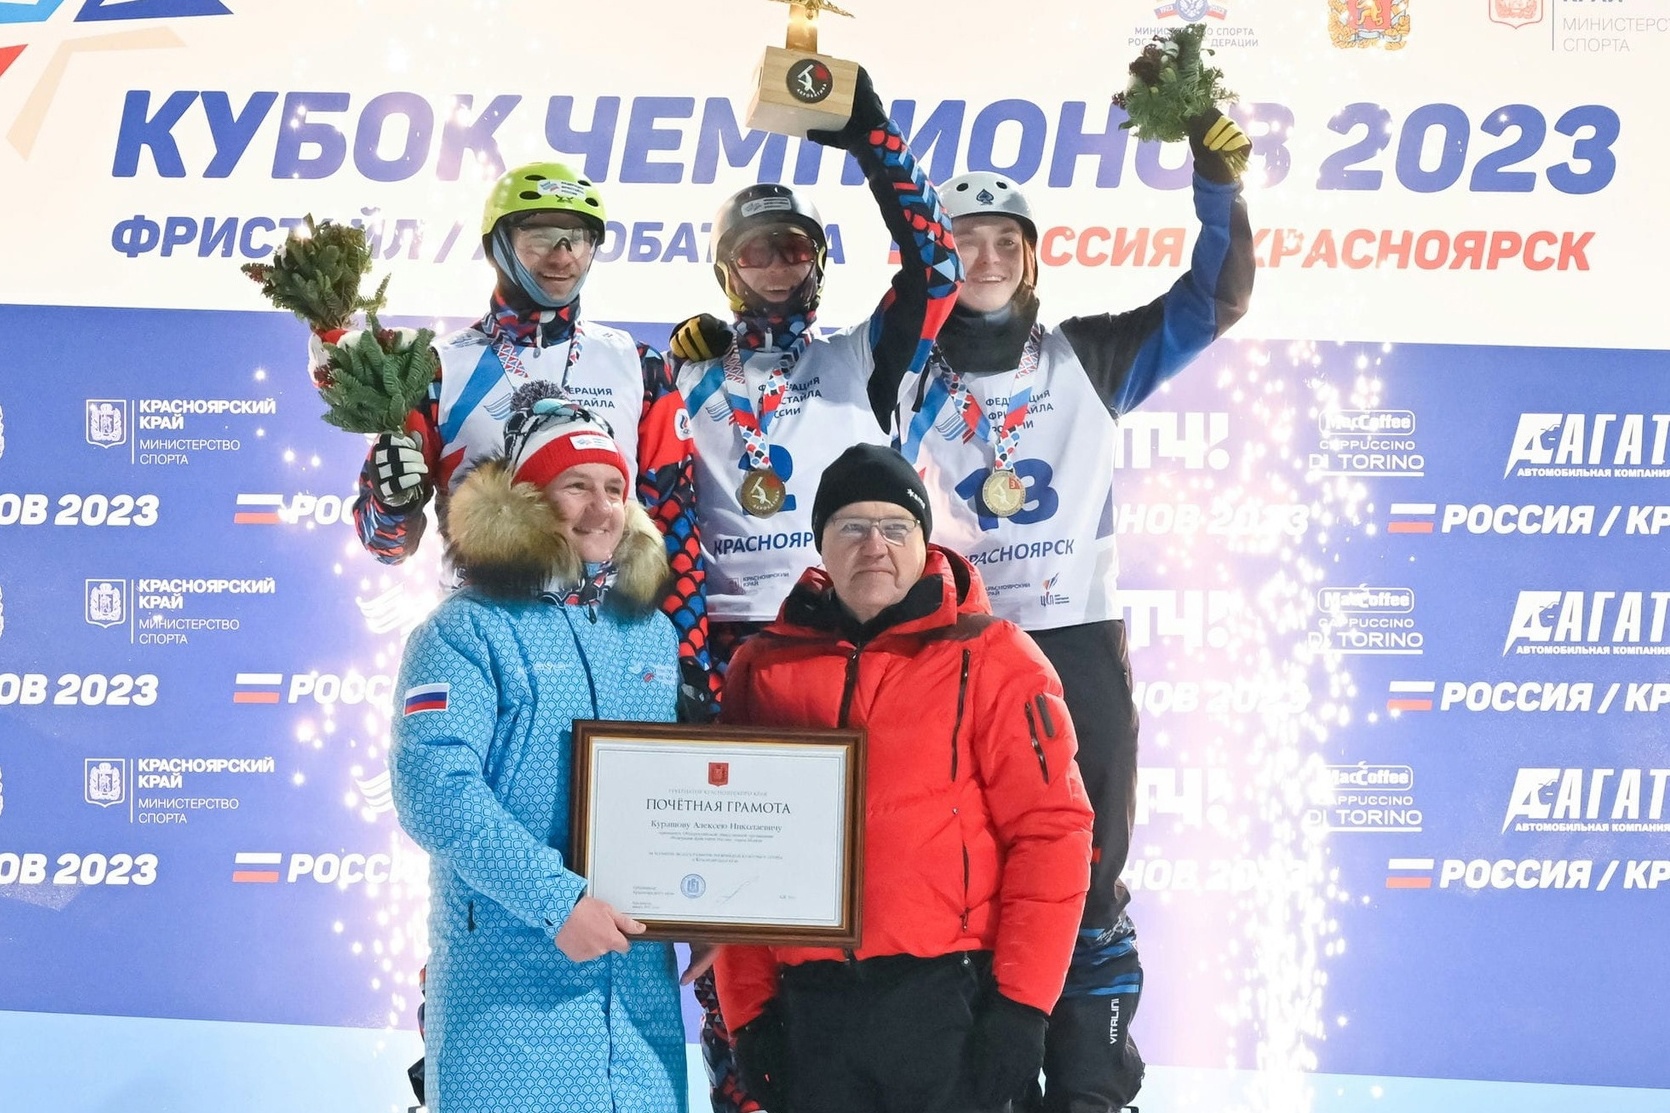 Ярославцы стали лучшими на I этапе Кубка чемпионов по фристайлу